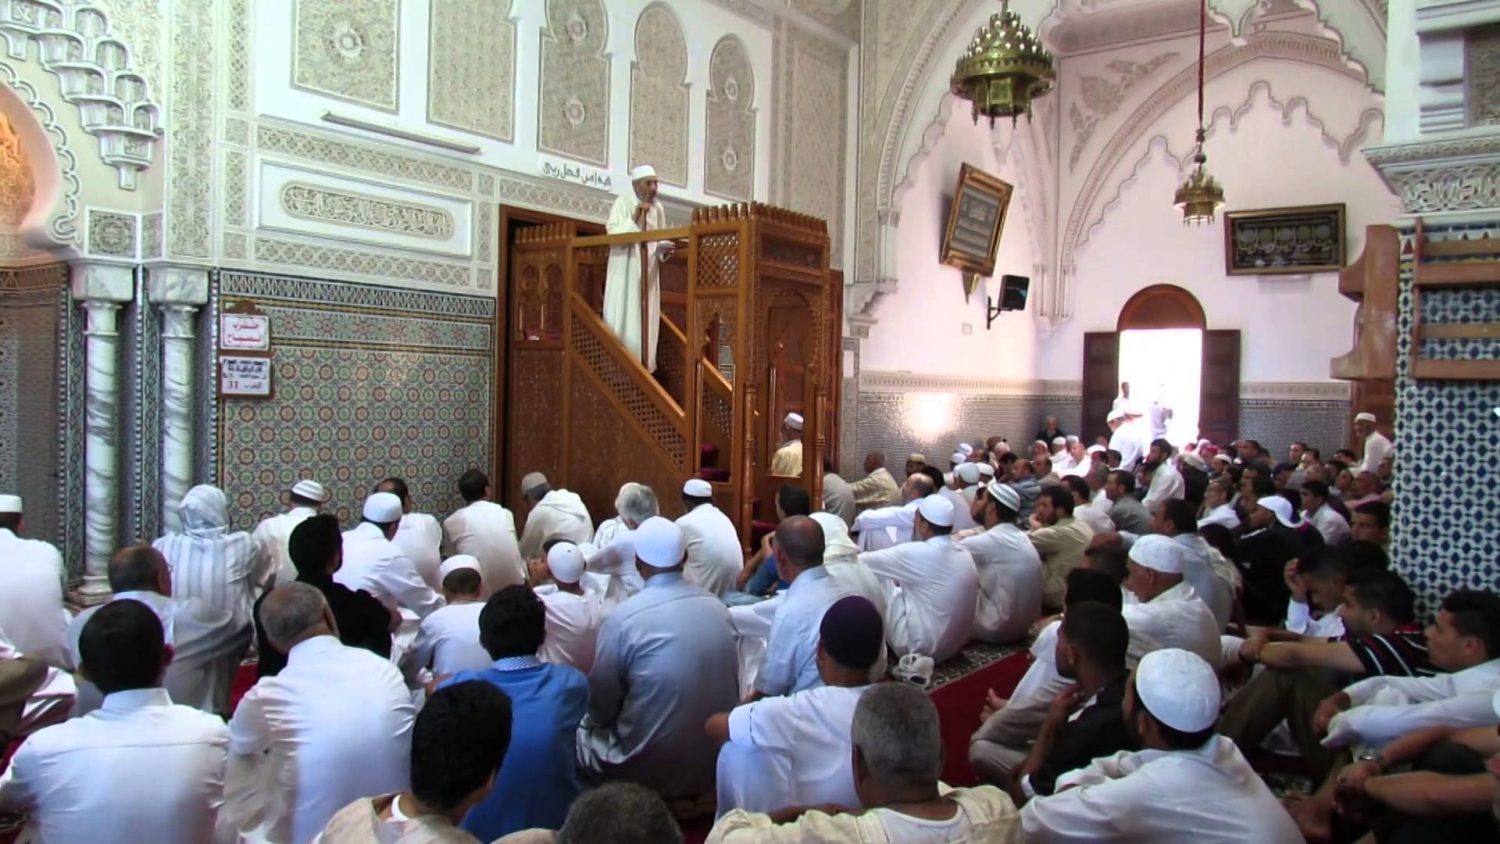 مواطن يصعد إلى المنبر ويمنع الإمام من إلقاء خطبة الجمعة بمسجد في مراكش (فيديو)